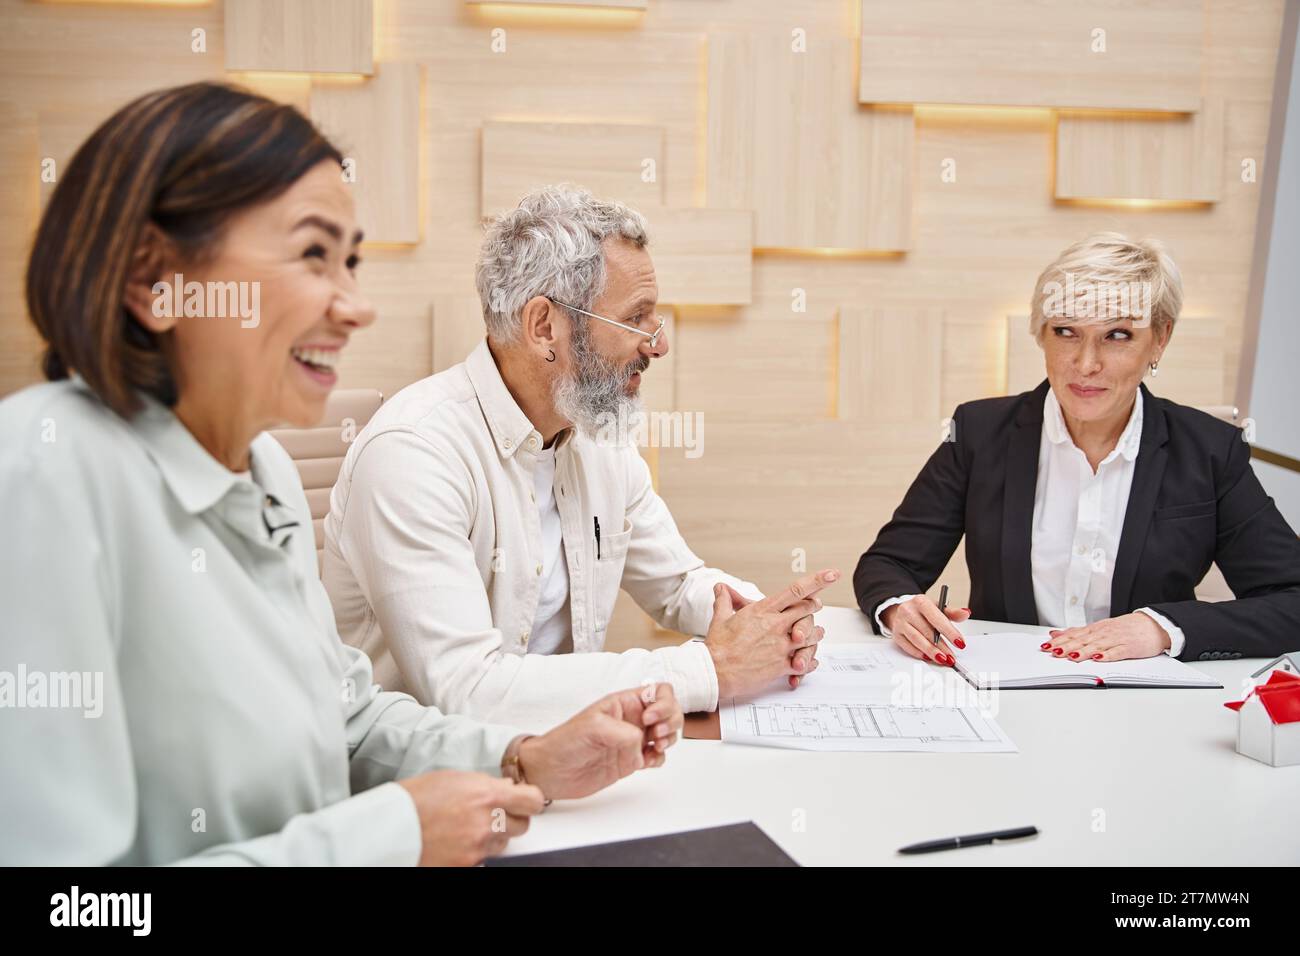 hombre de mediana edad feliz sonriendo cerca de la esposa y agente inmobiliario femenino mientras se sienta cerca del plano del nuevo hogar Foto de stock